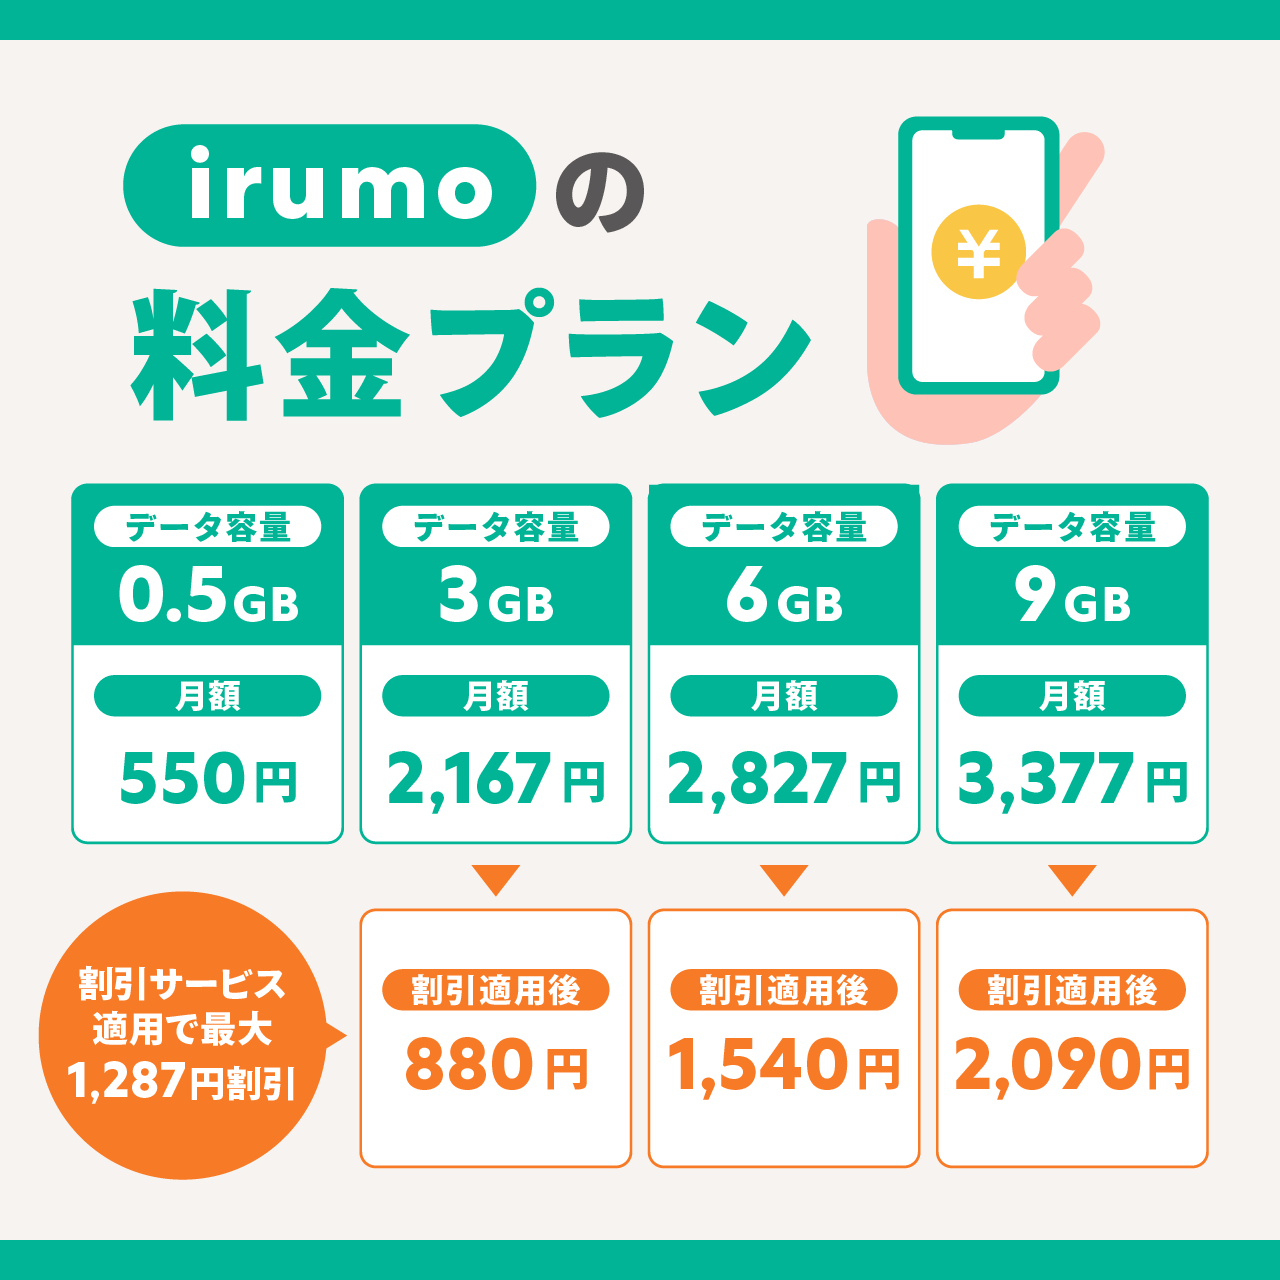 irumo(イルモ)の料金プラン